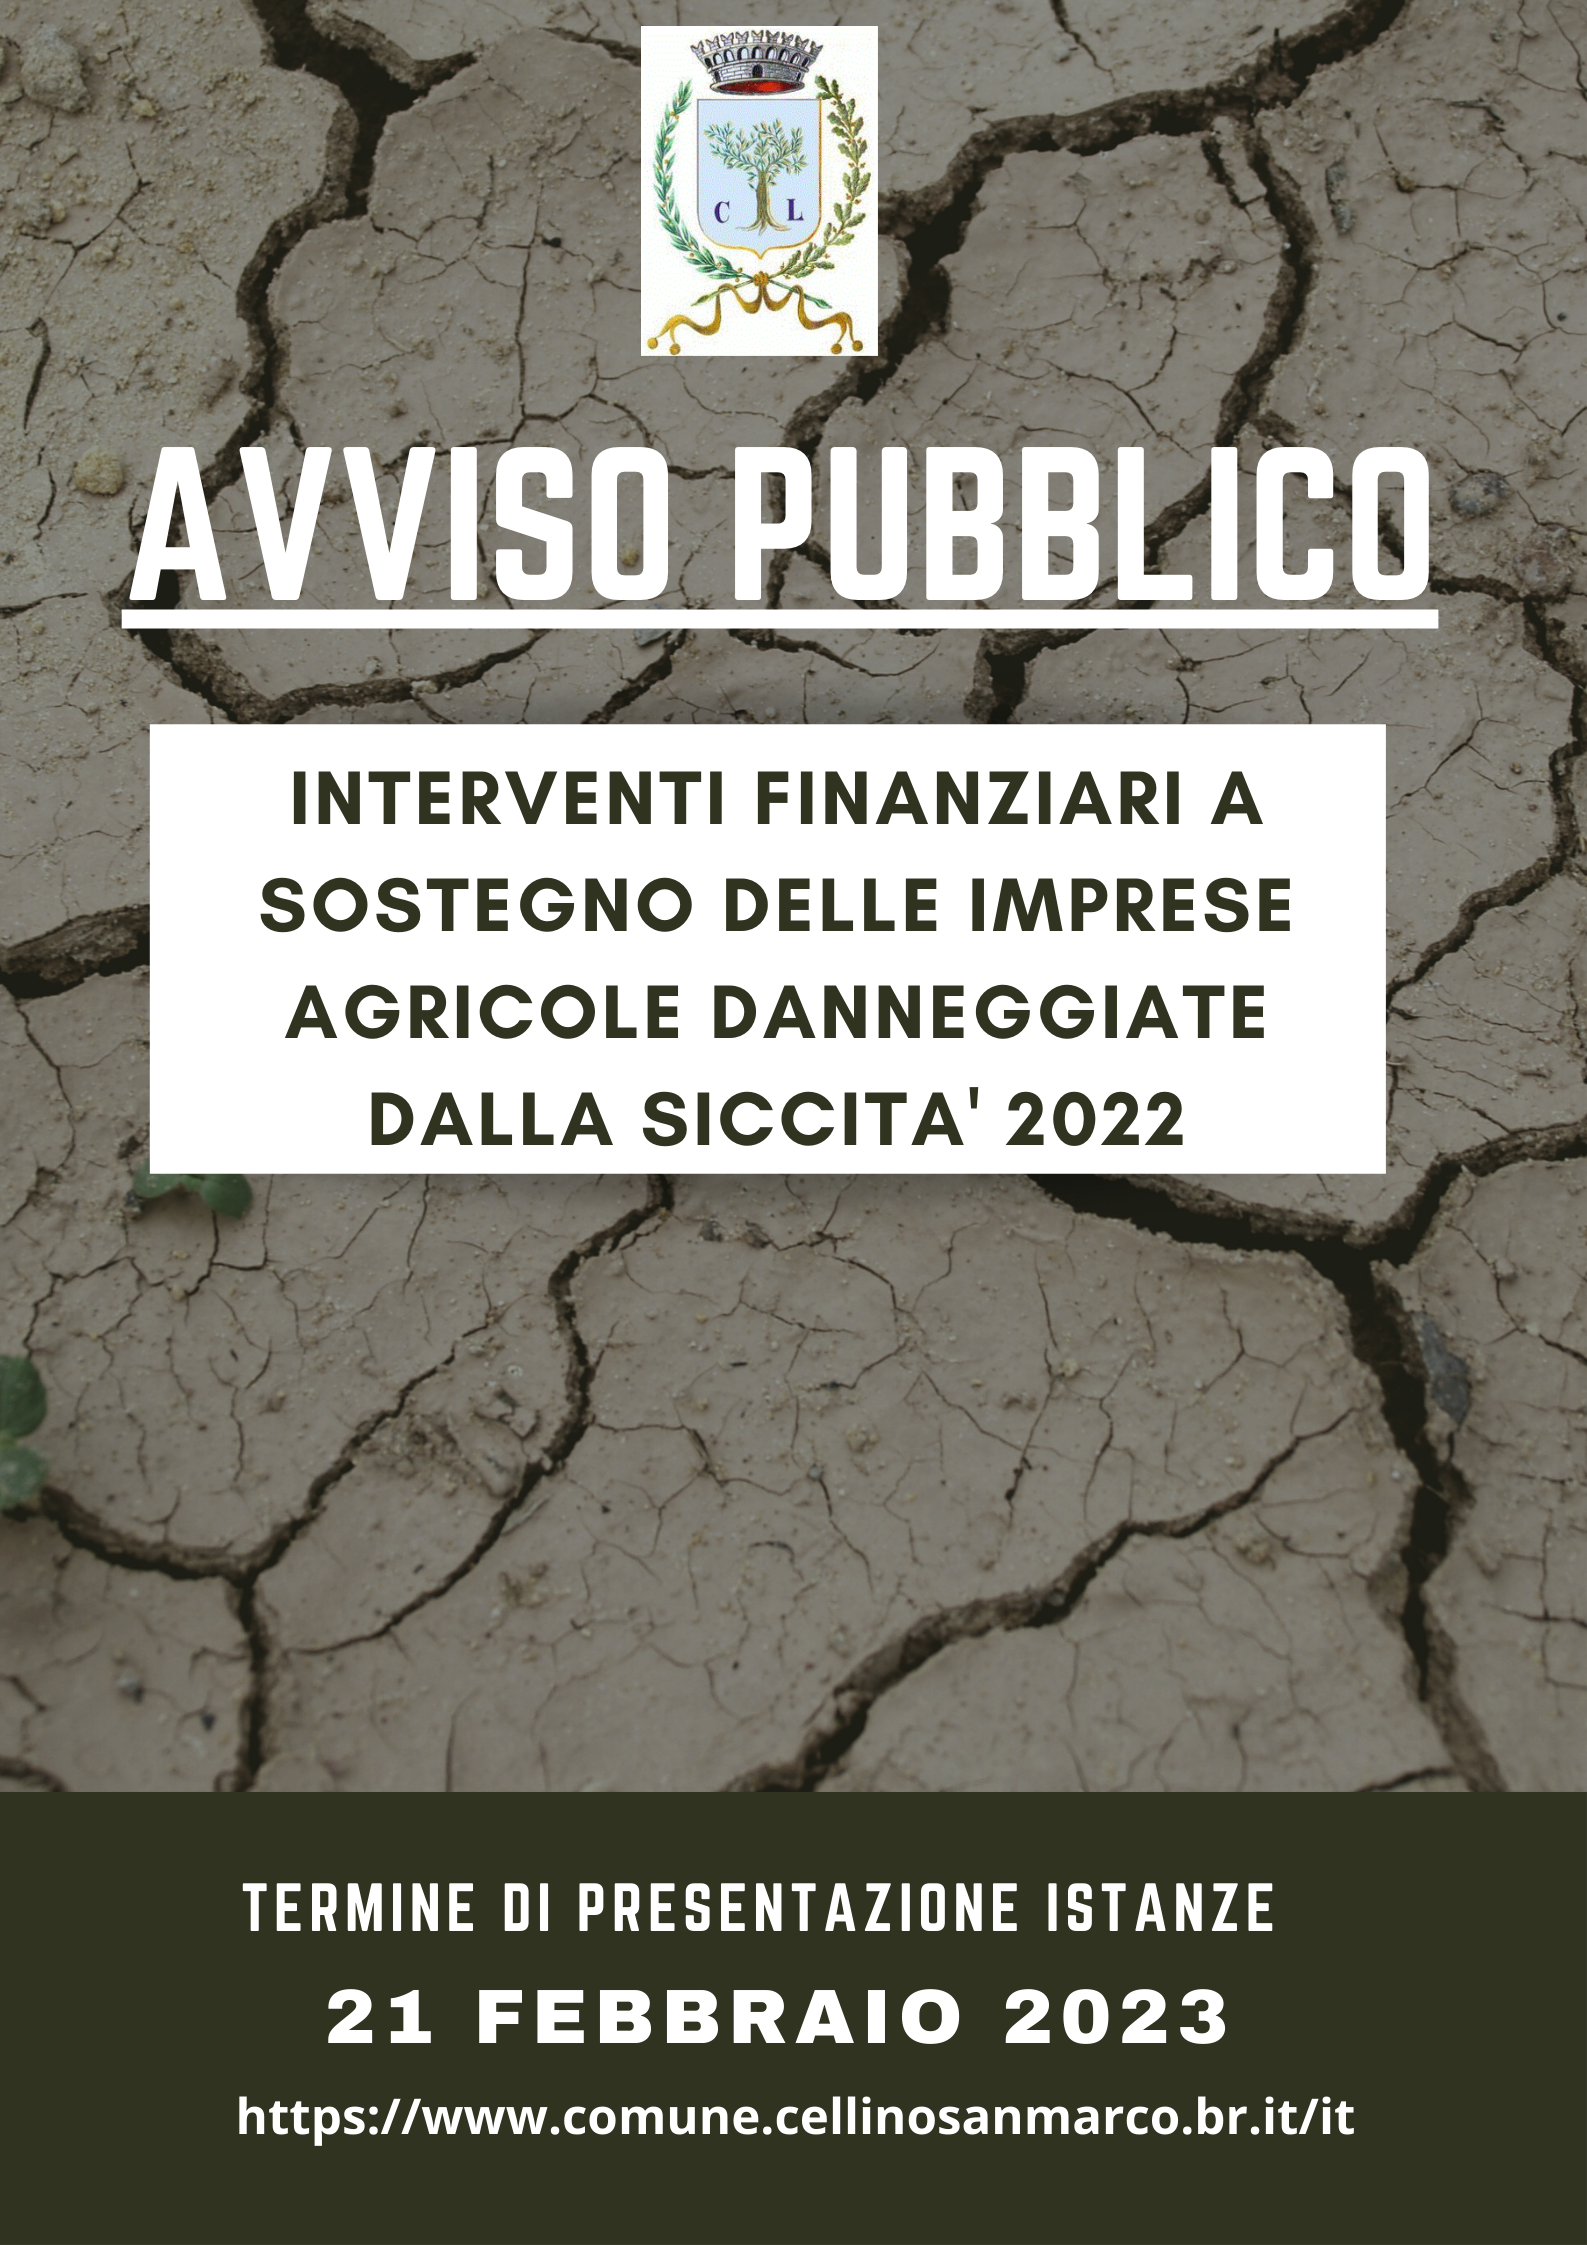 INTERVENTI FINANZIARI A SOSTEGNO DELLE IMPRESE AGRICOLE DANNEGGIATE DALLA SICCITA' 2022 -AVVISO PUBBLICO